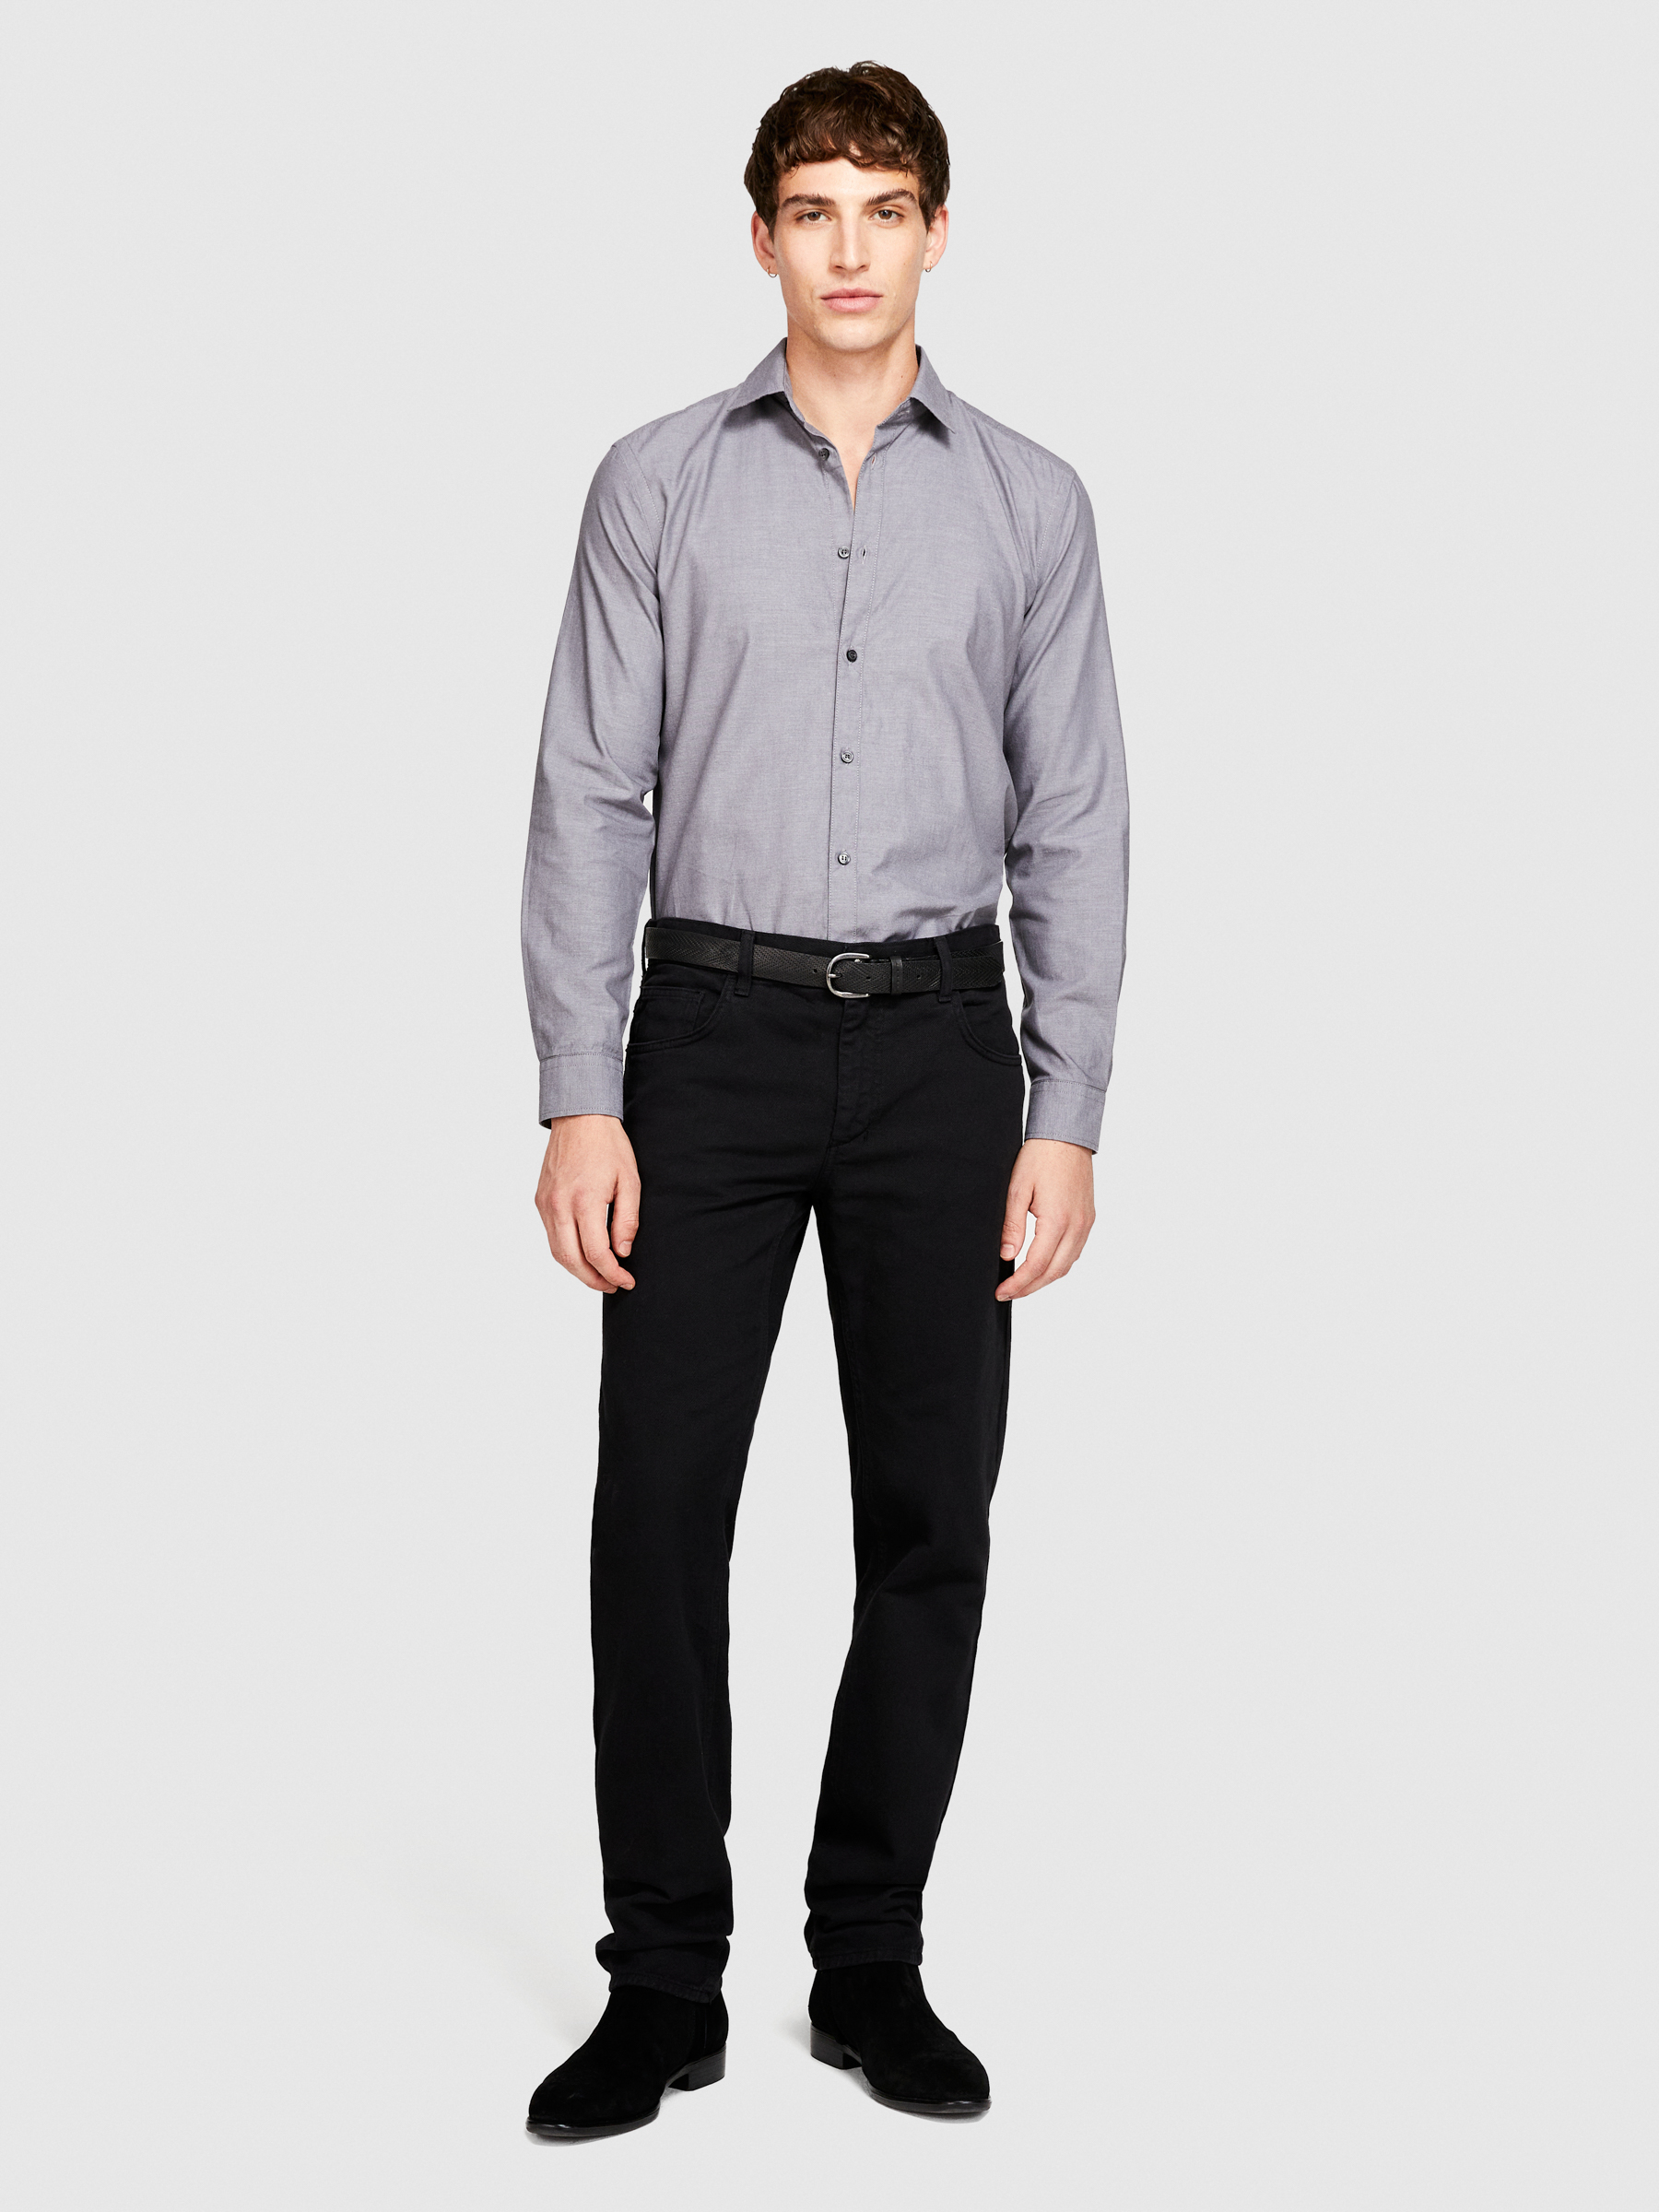 Sisley - 100% Cotton Shirt, Man, Gray, Size: 43